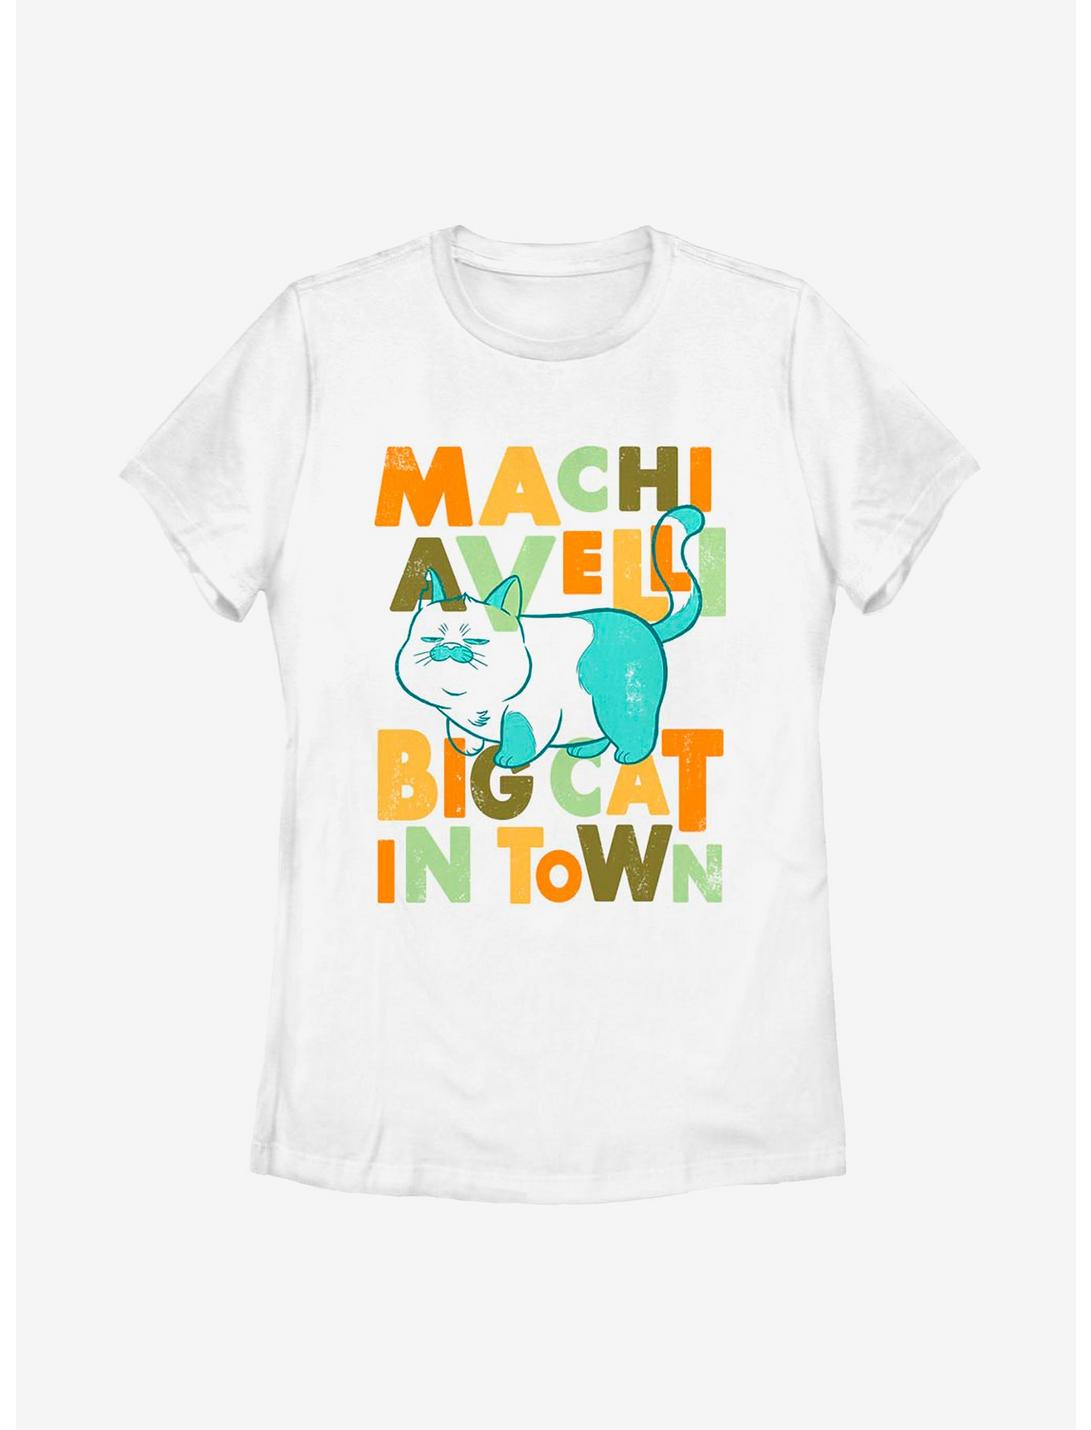 Disney Pixar Luca Machiavelli Big Cat In Town Womens T-Shirt, WHITE, hi-res